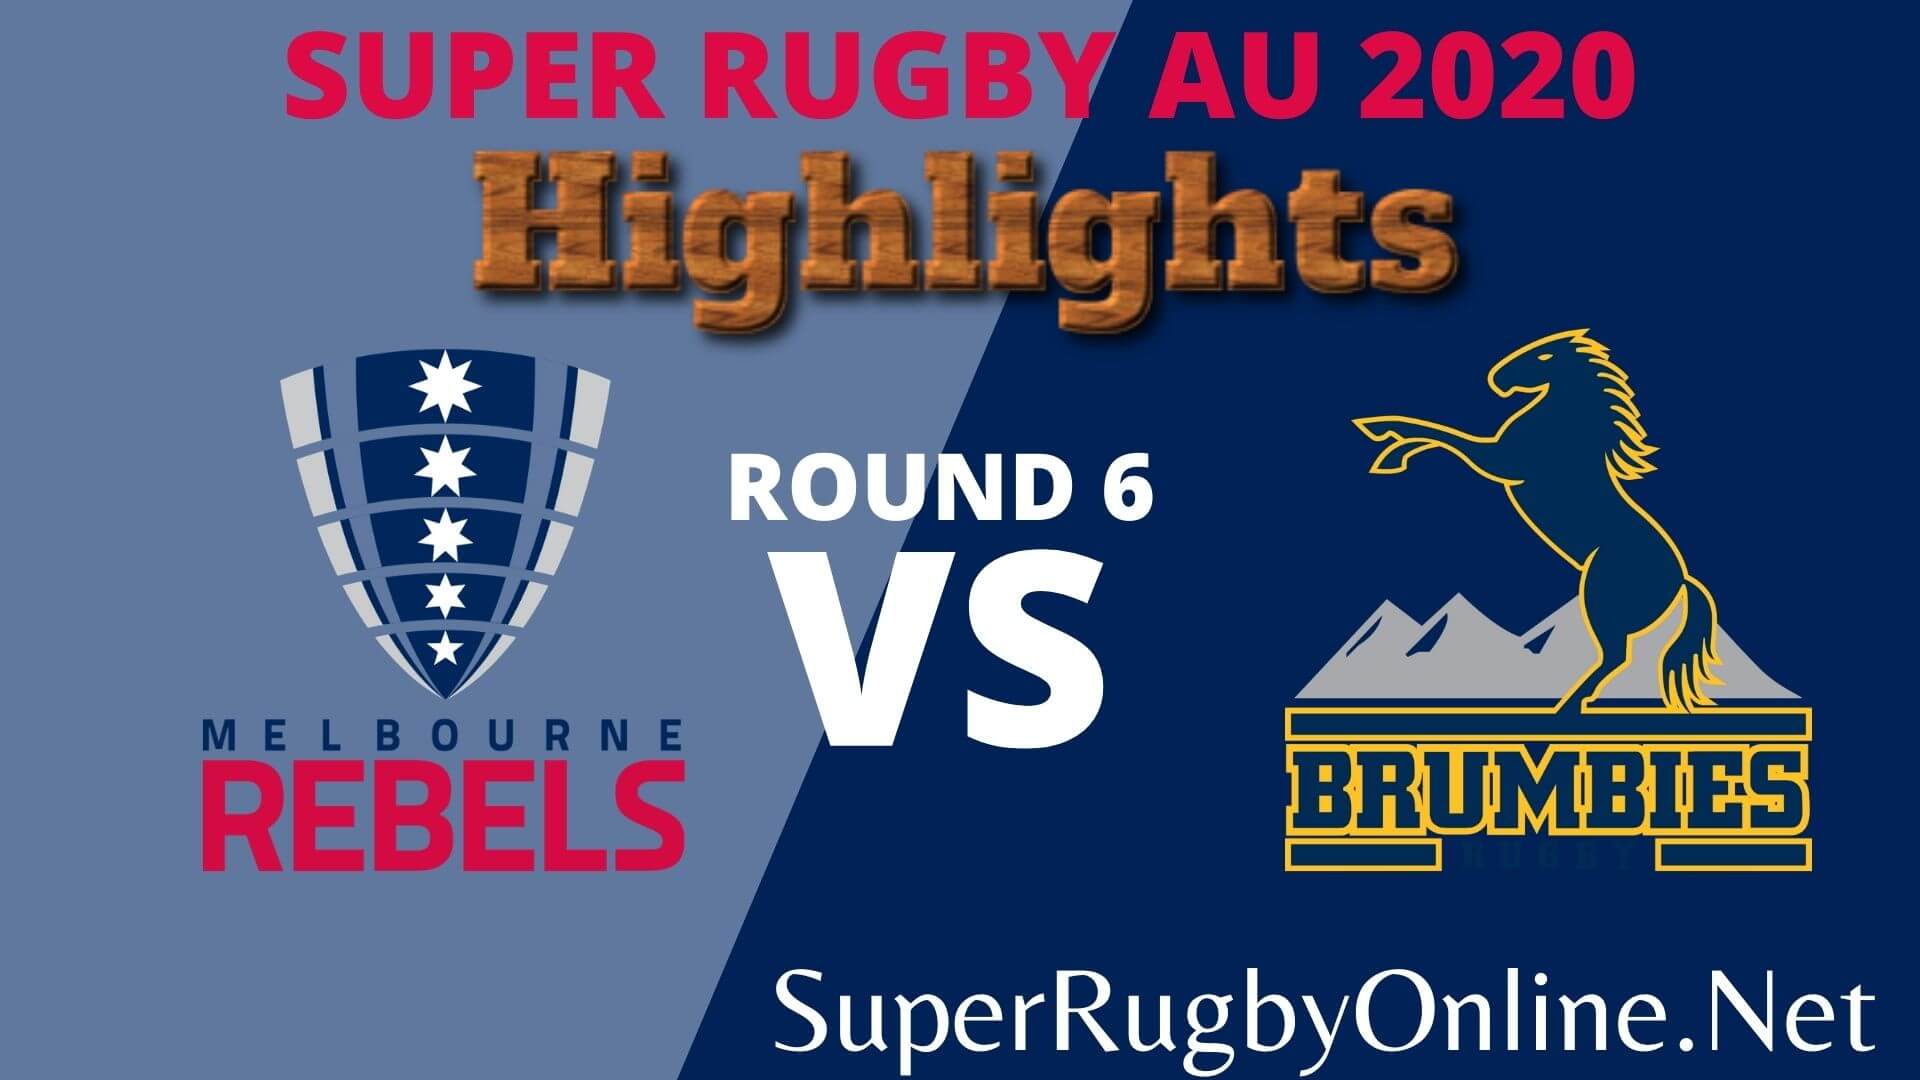 Rebels Vs Brumbies Rd 6 Highlights 2020 Super Rugby Au